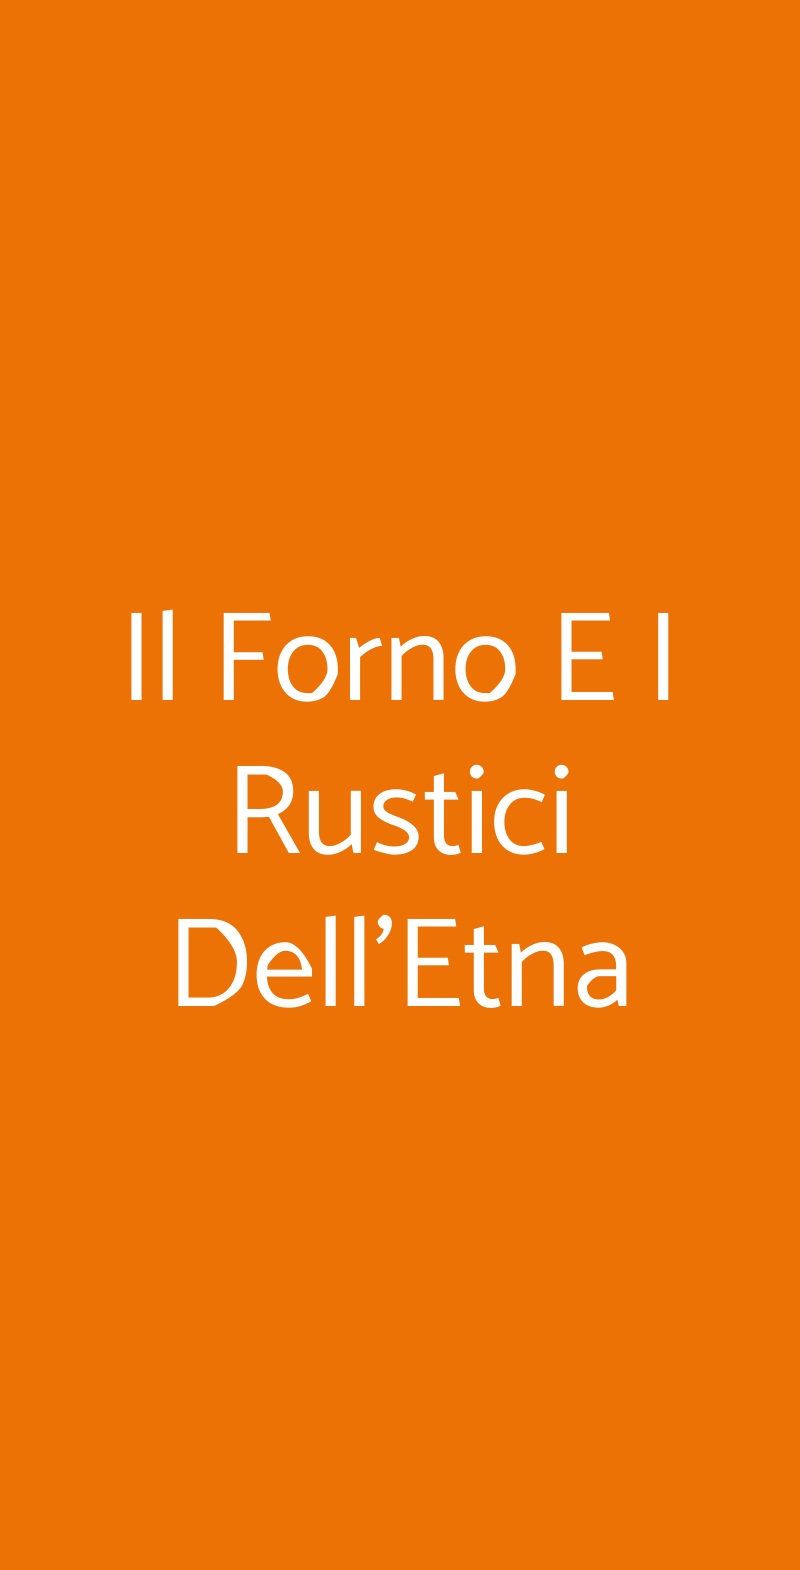 Il Forno E I Rustici Dell'Etna Pisa menù 1 pagina